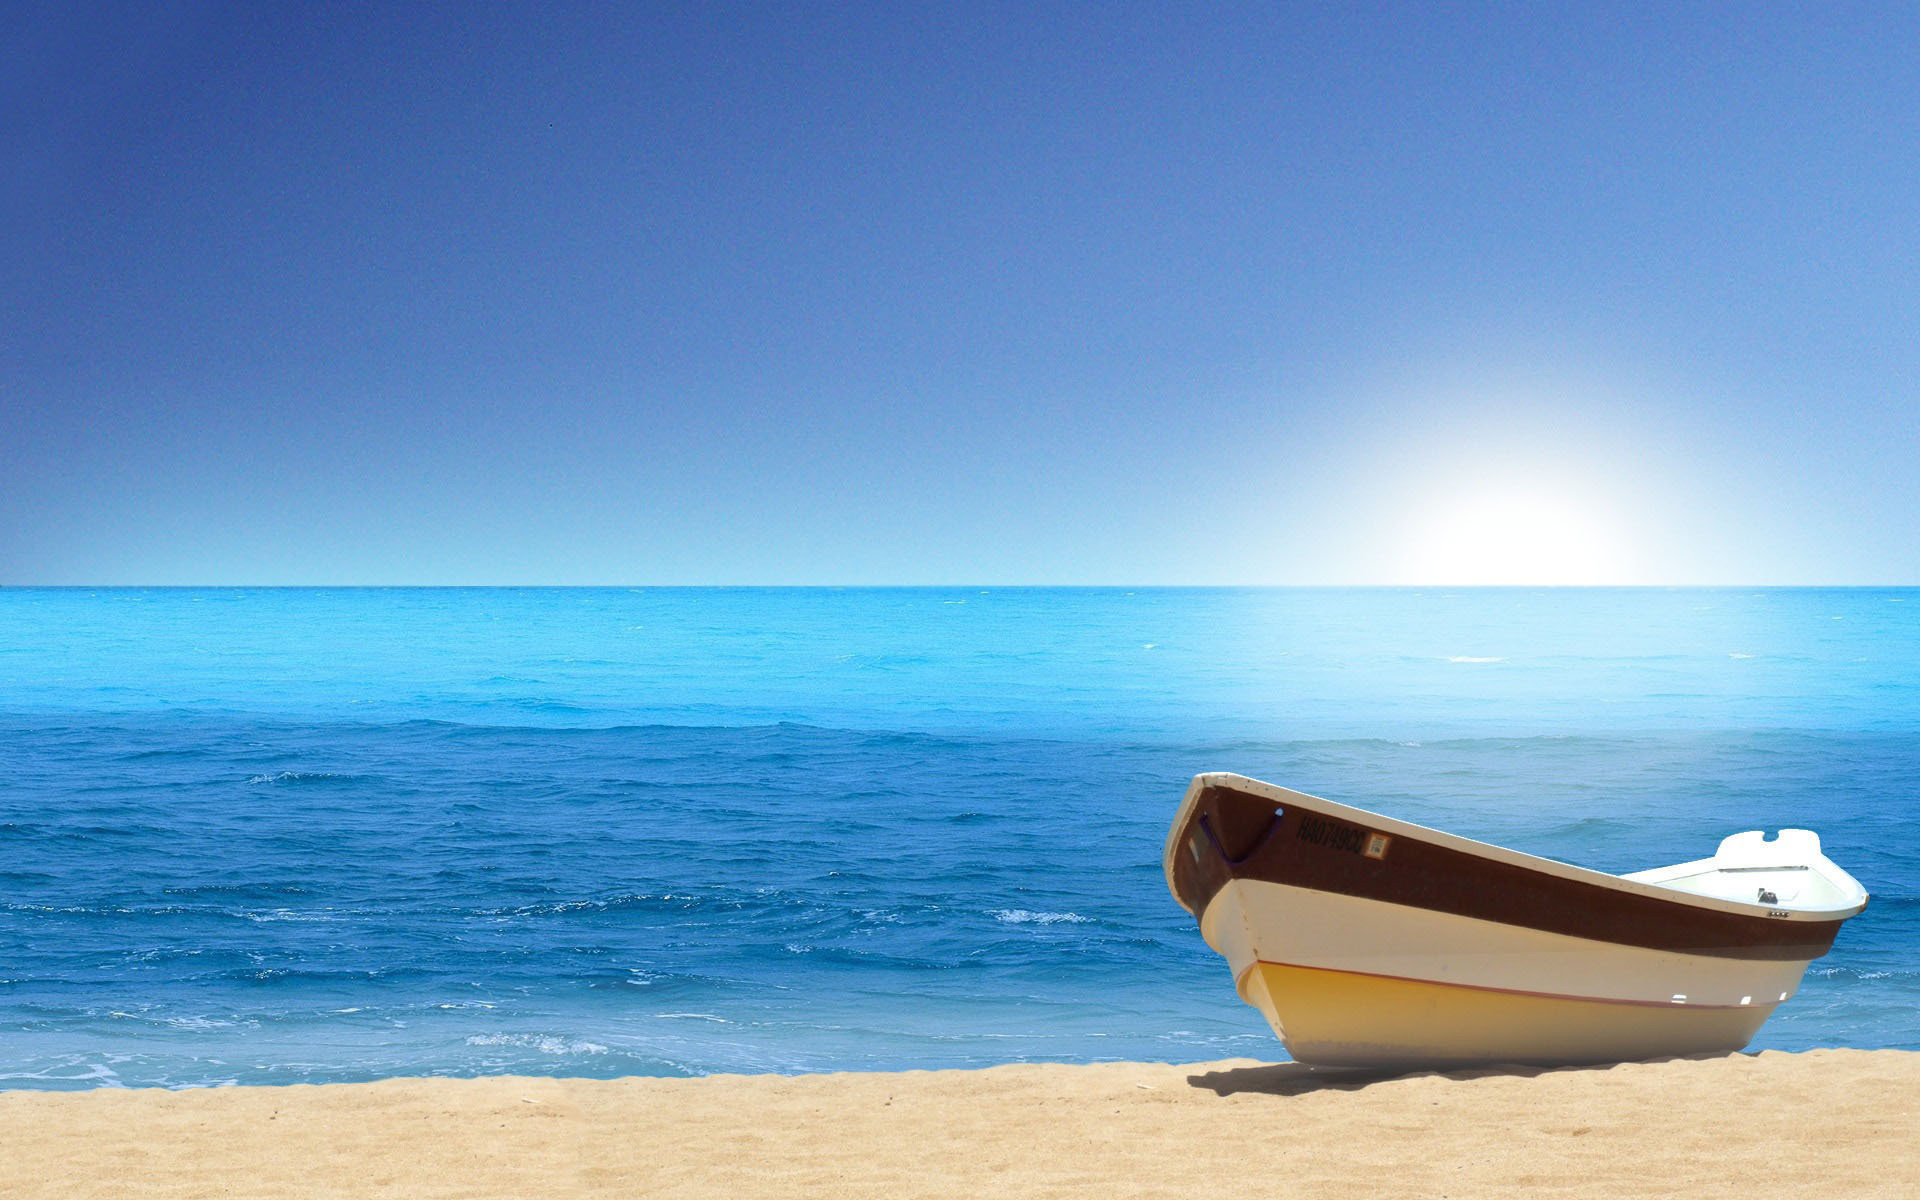 Скачать обои бесплатно Песок, Лодки, Море, Пейзаж картинка на рабочий стол ПК